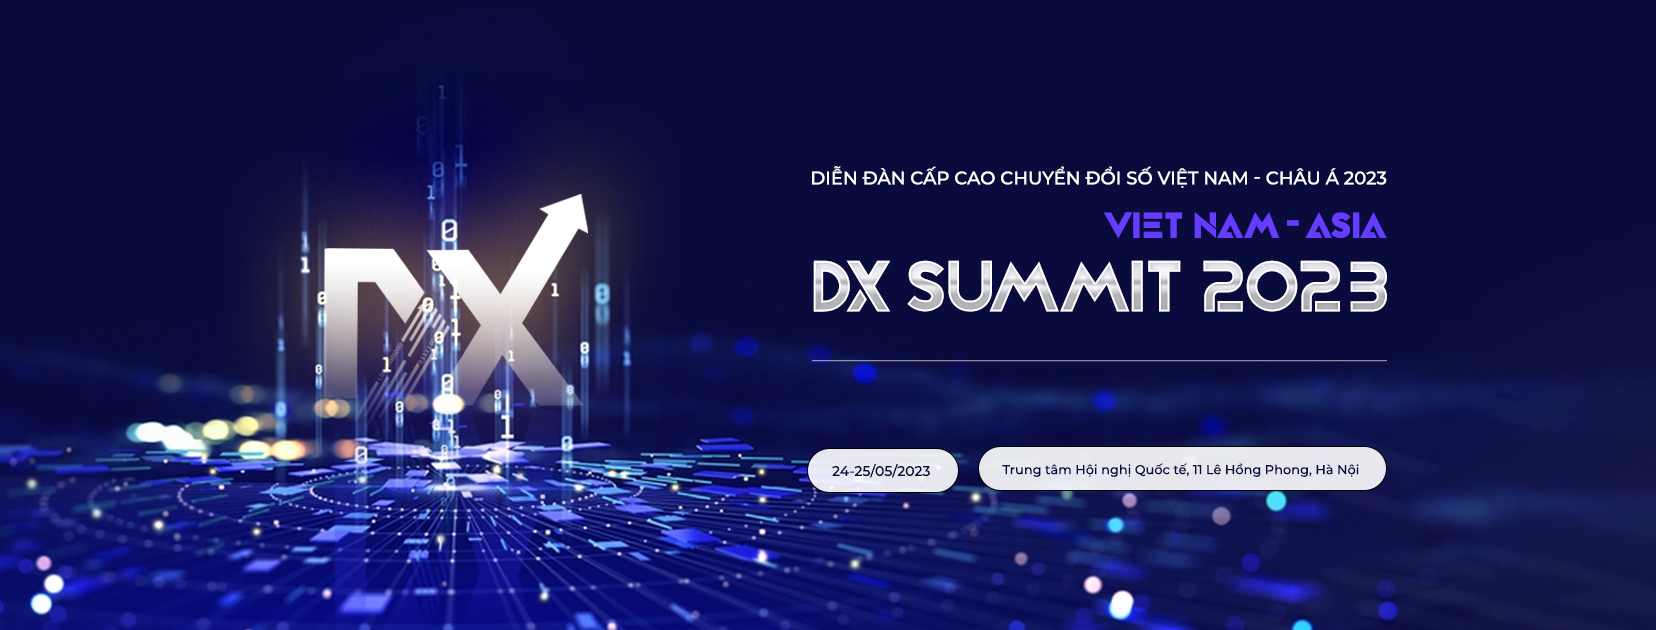 SiciX tham dự Diễn đàn cấp cao Chuyển đổi số Việt Nam - Châu Á 2023 (VIETNAM  - ASIA DX SUMMIT) - SiciX - Giải pháp chuyển đổi số doanh nghiệp toàn diện